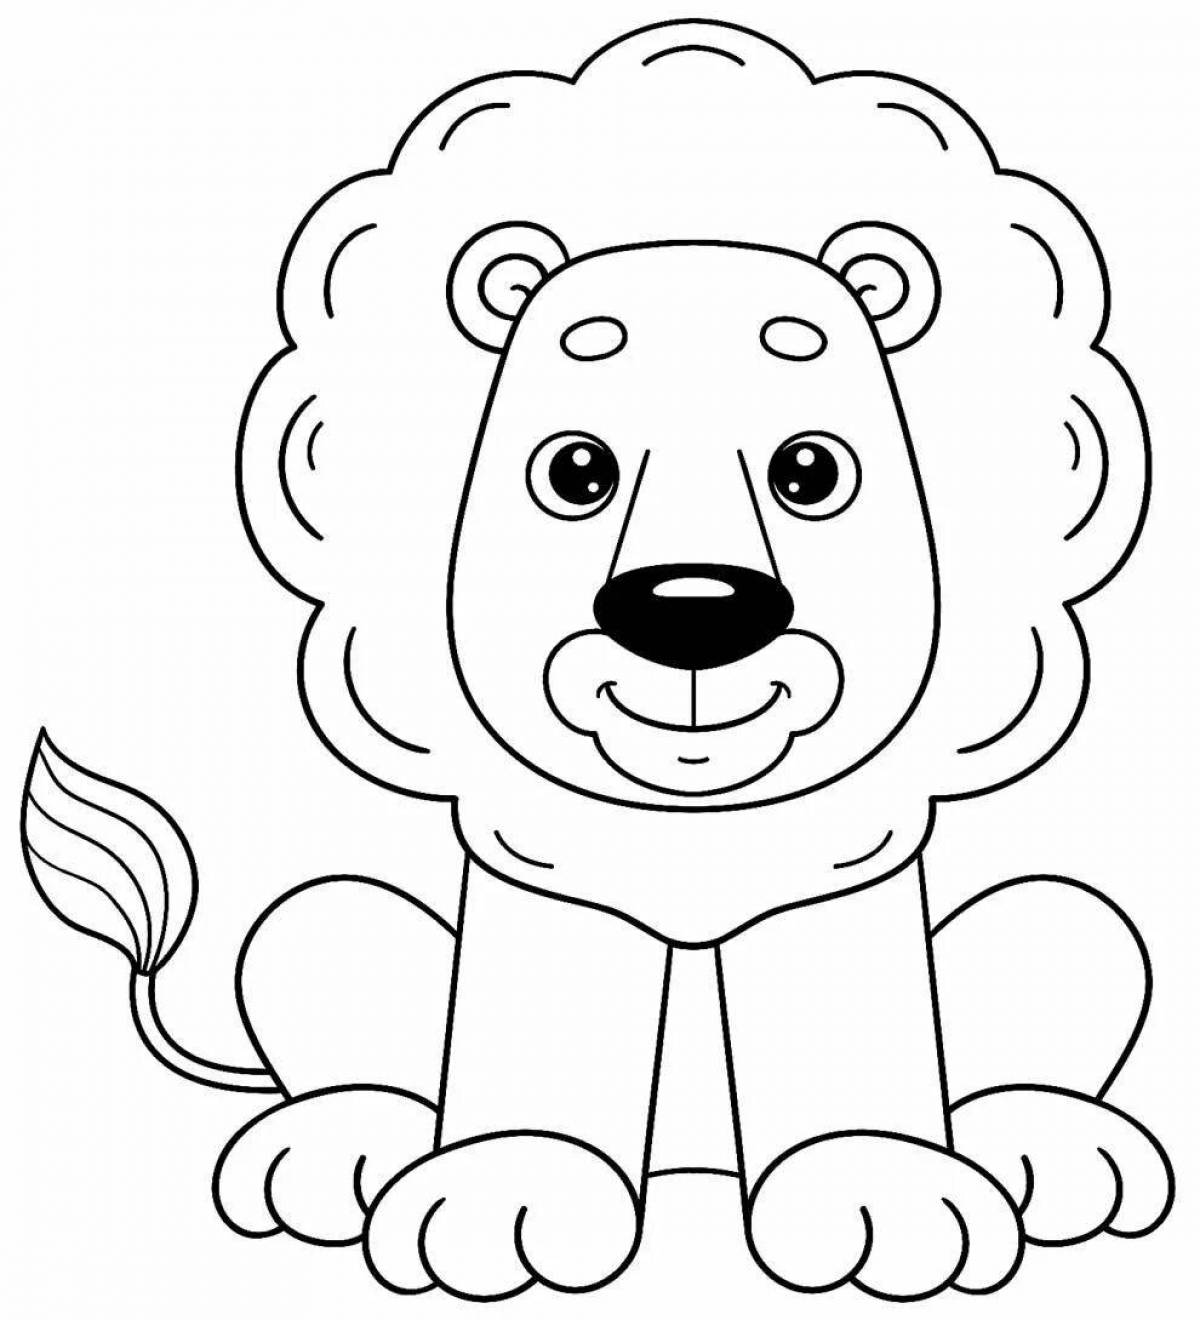 Красочная страница раскраски львенка для детей